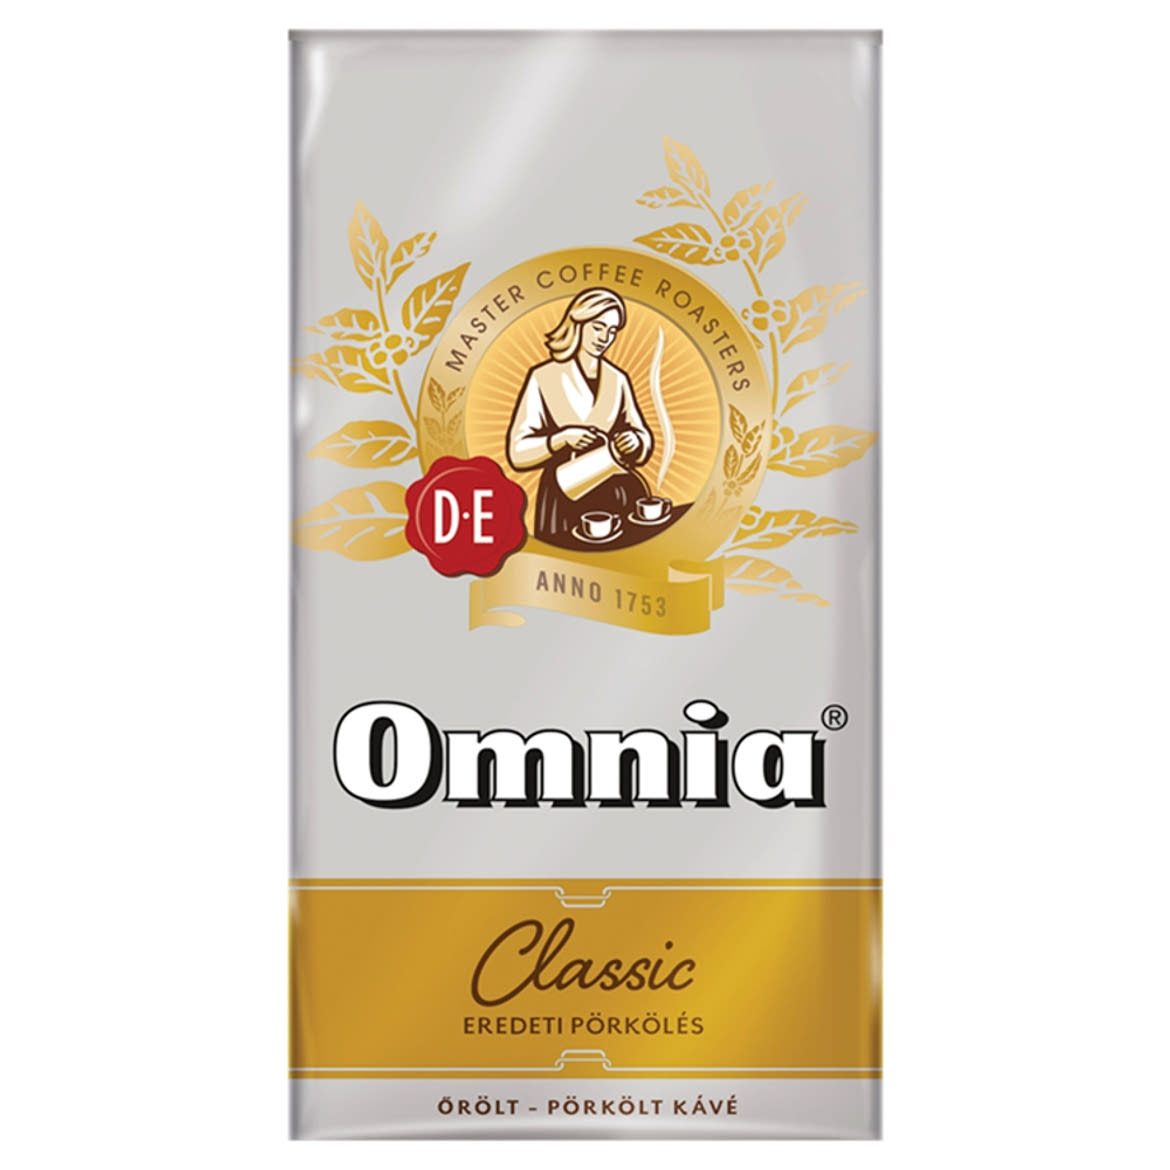 Douwe Egberts Omnia Classic eredeti pörkölésű őrölt pörkölt kávé